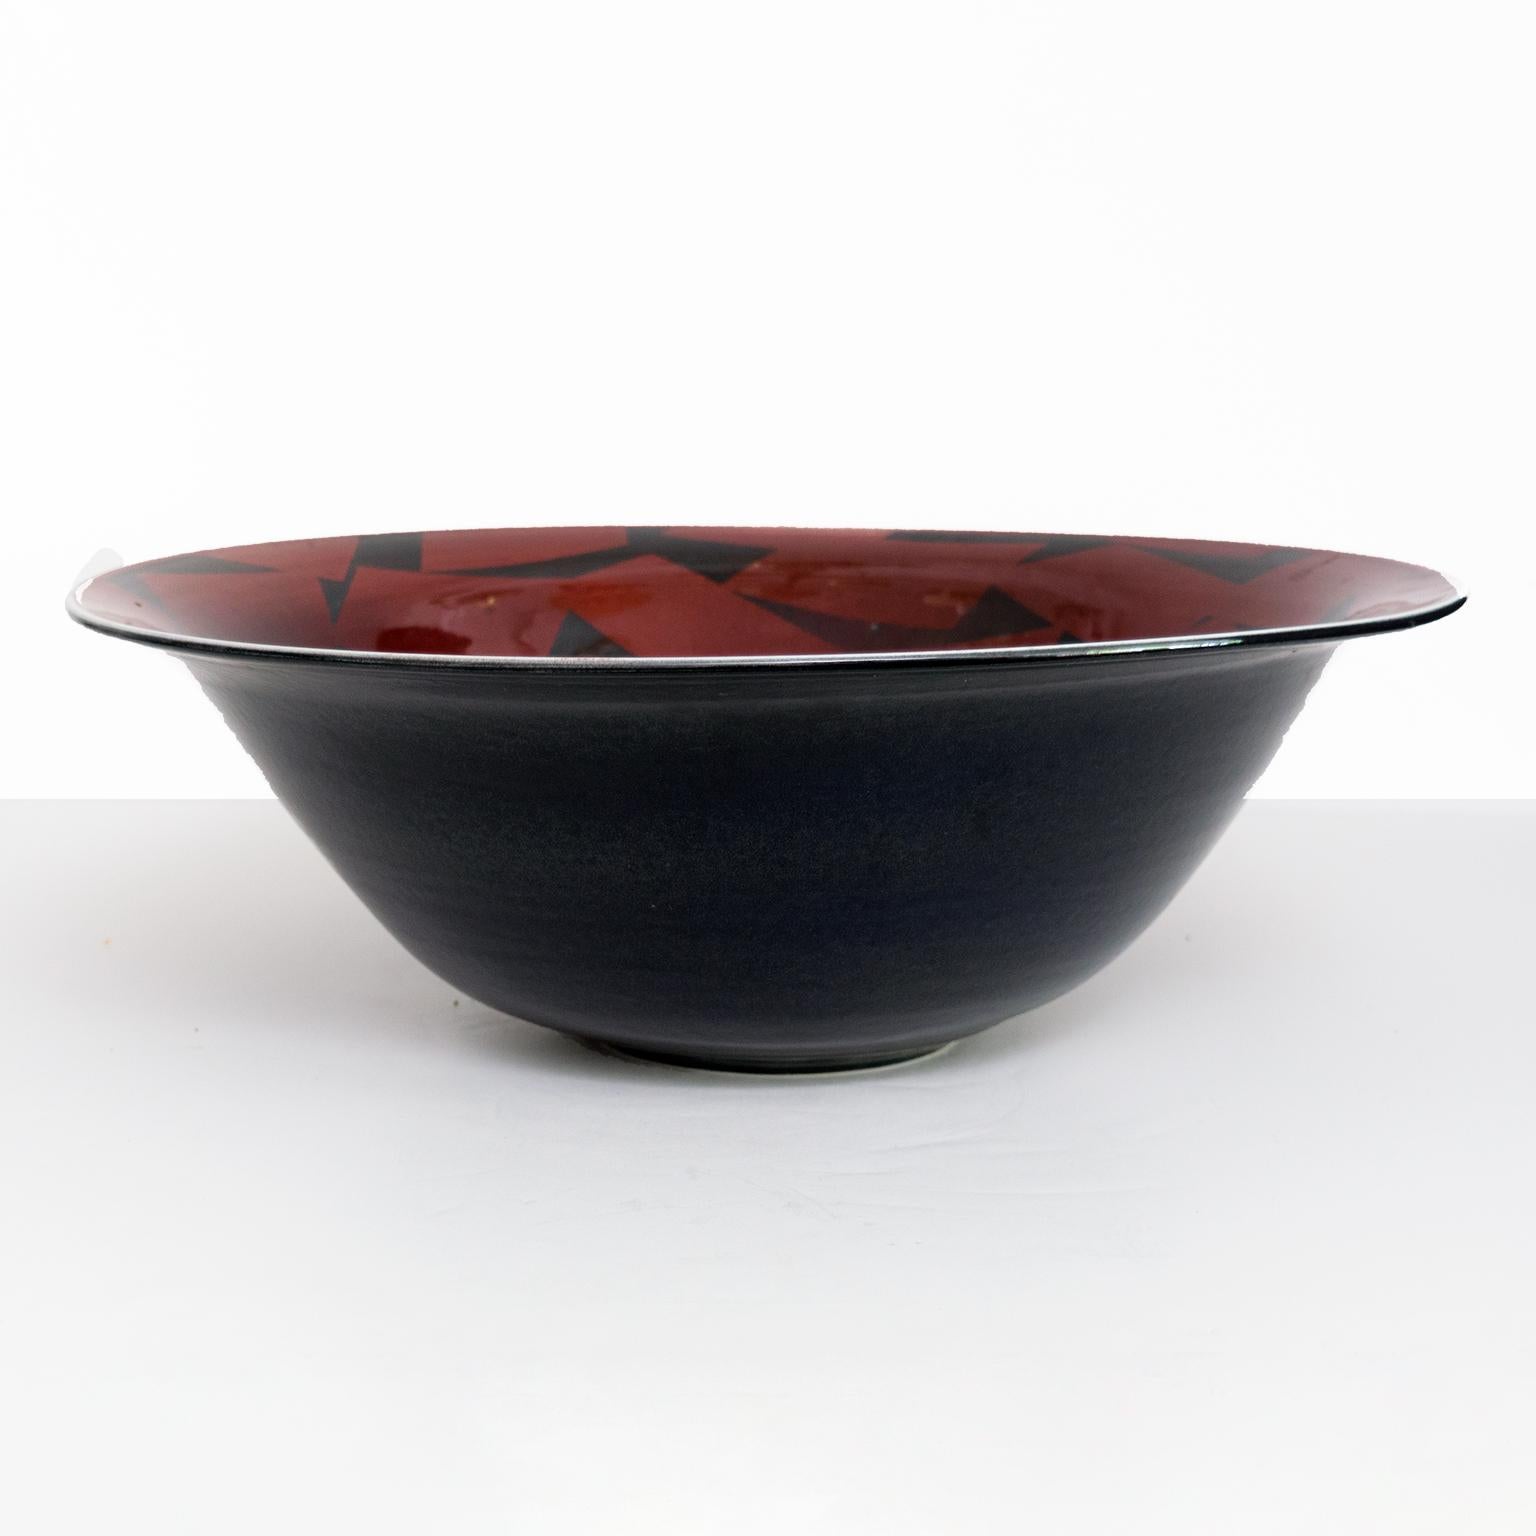 Grand bol en porcelaine d'Inger Persson, unique dans le studio de Rorstrand, émaillé en noir à l'extérieur et en rouge profond à l'intérieur, avec un décor de formes angulaires en noir. Signé en bas et daté de 1988. Moderne scandinave

Mesures :